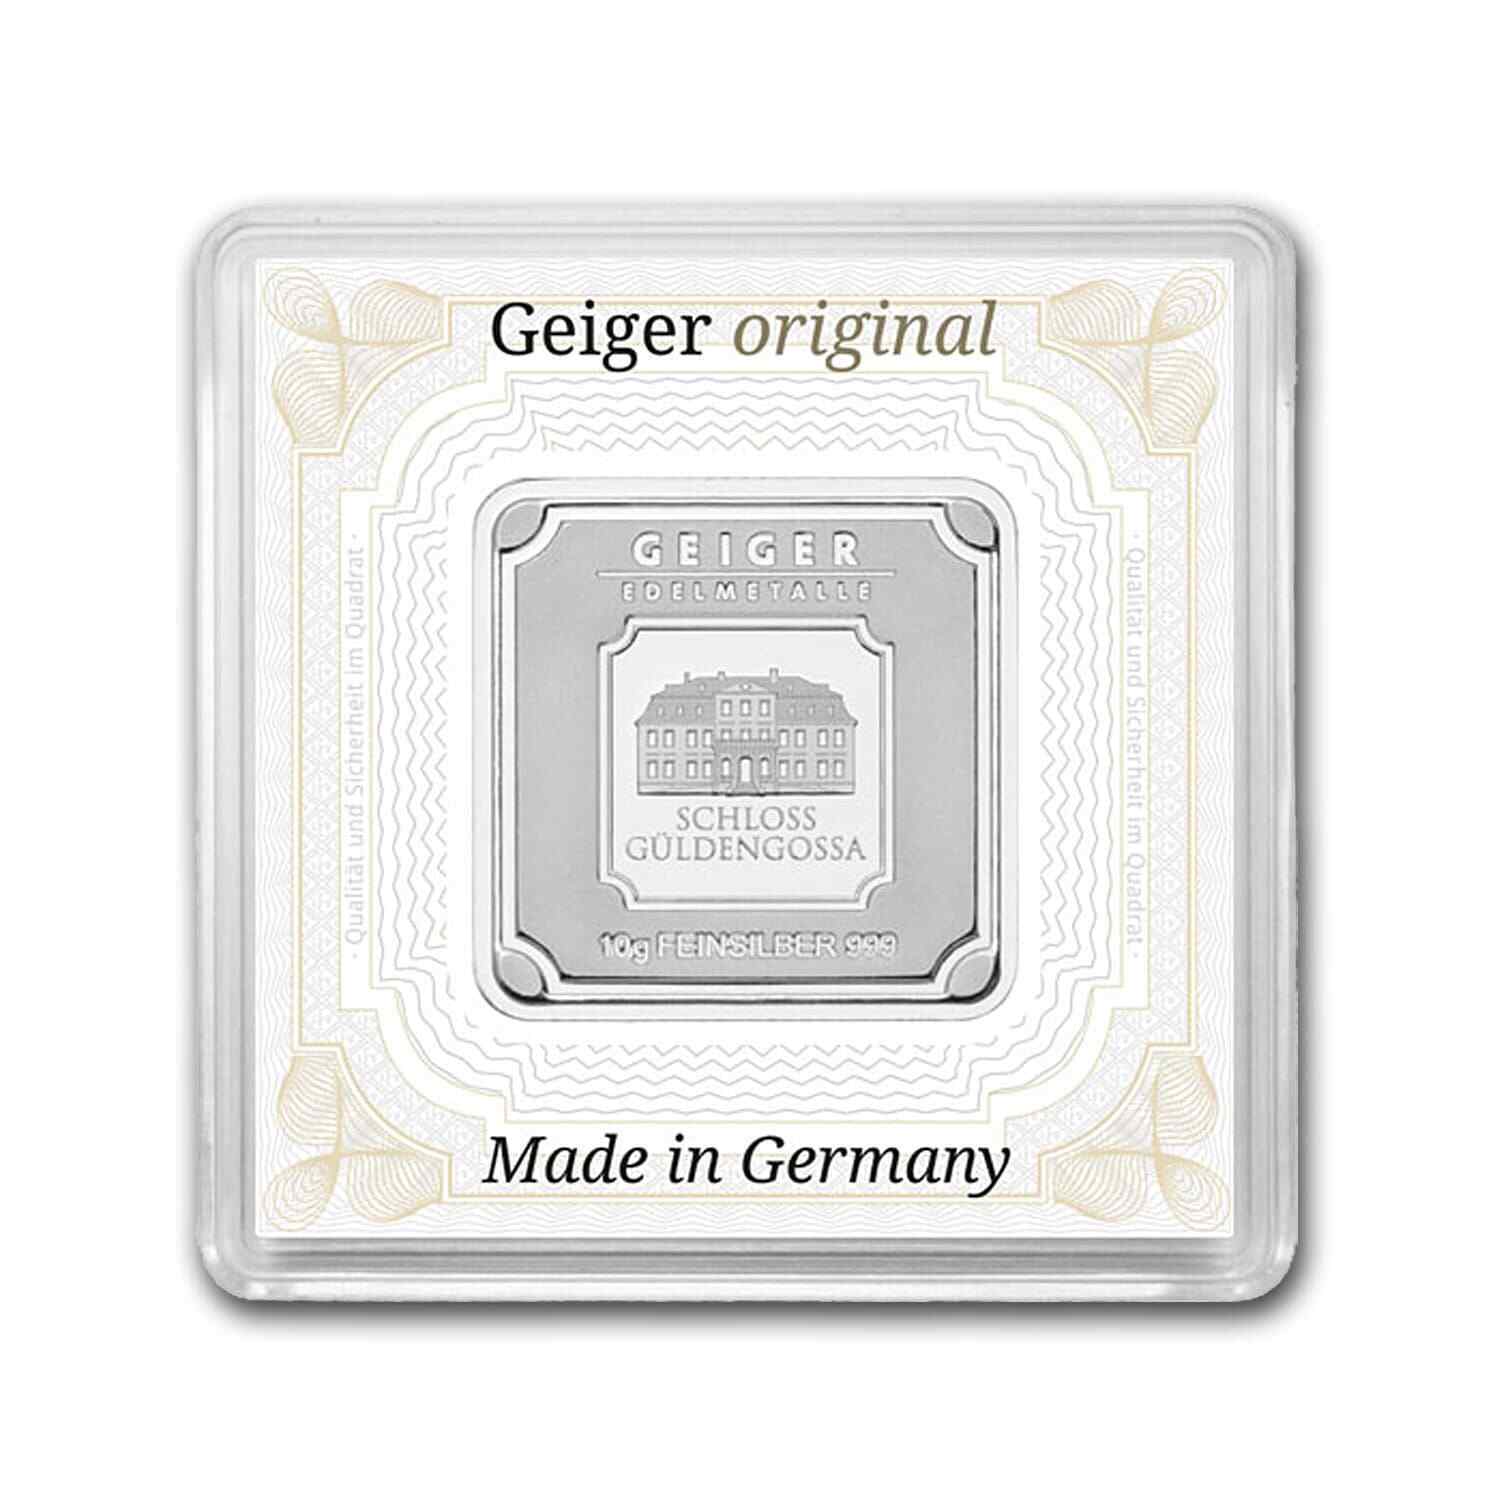 Geiger Original Schloss Guldengossa 10 gm Silver Square Minted Bar in Capsule